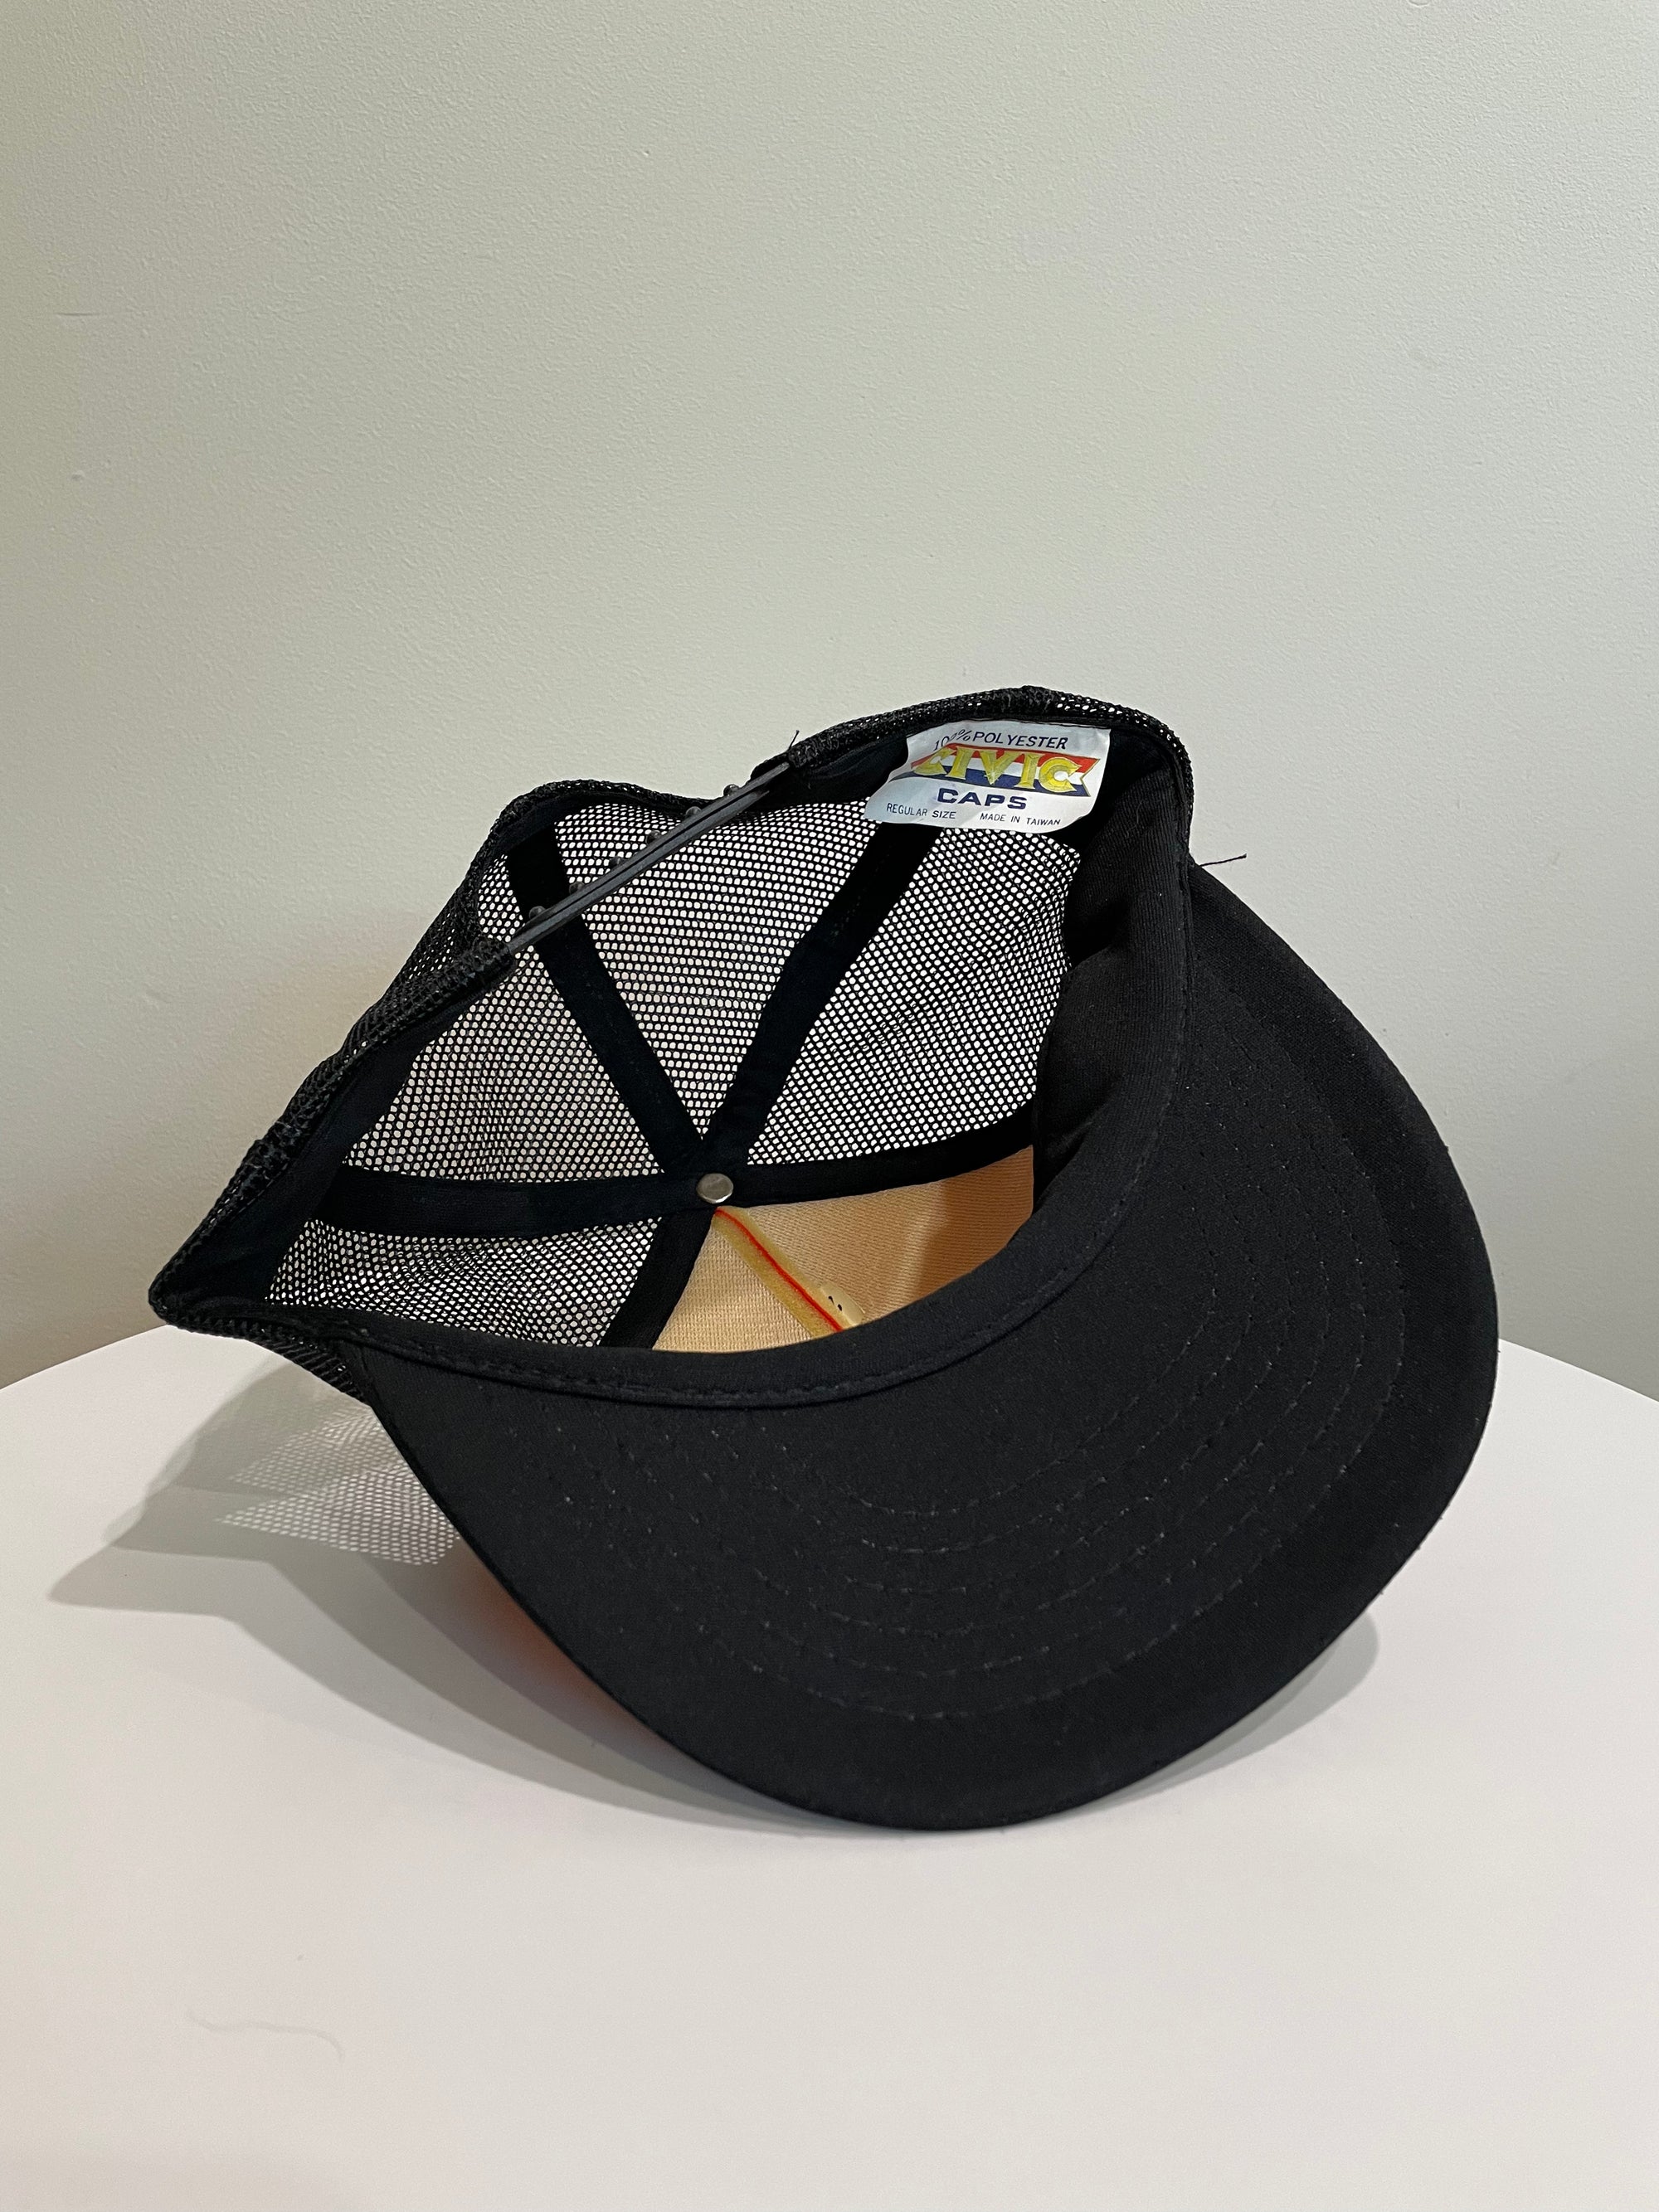 1990s “Perfect Cut” Trucker Hat